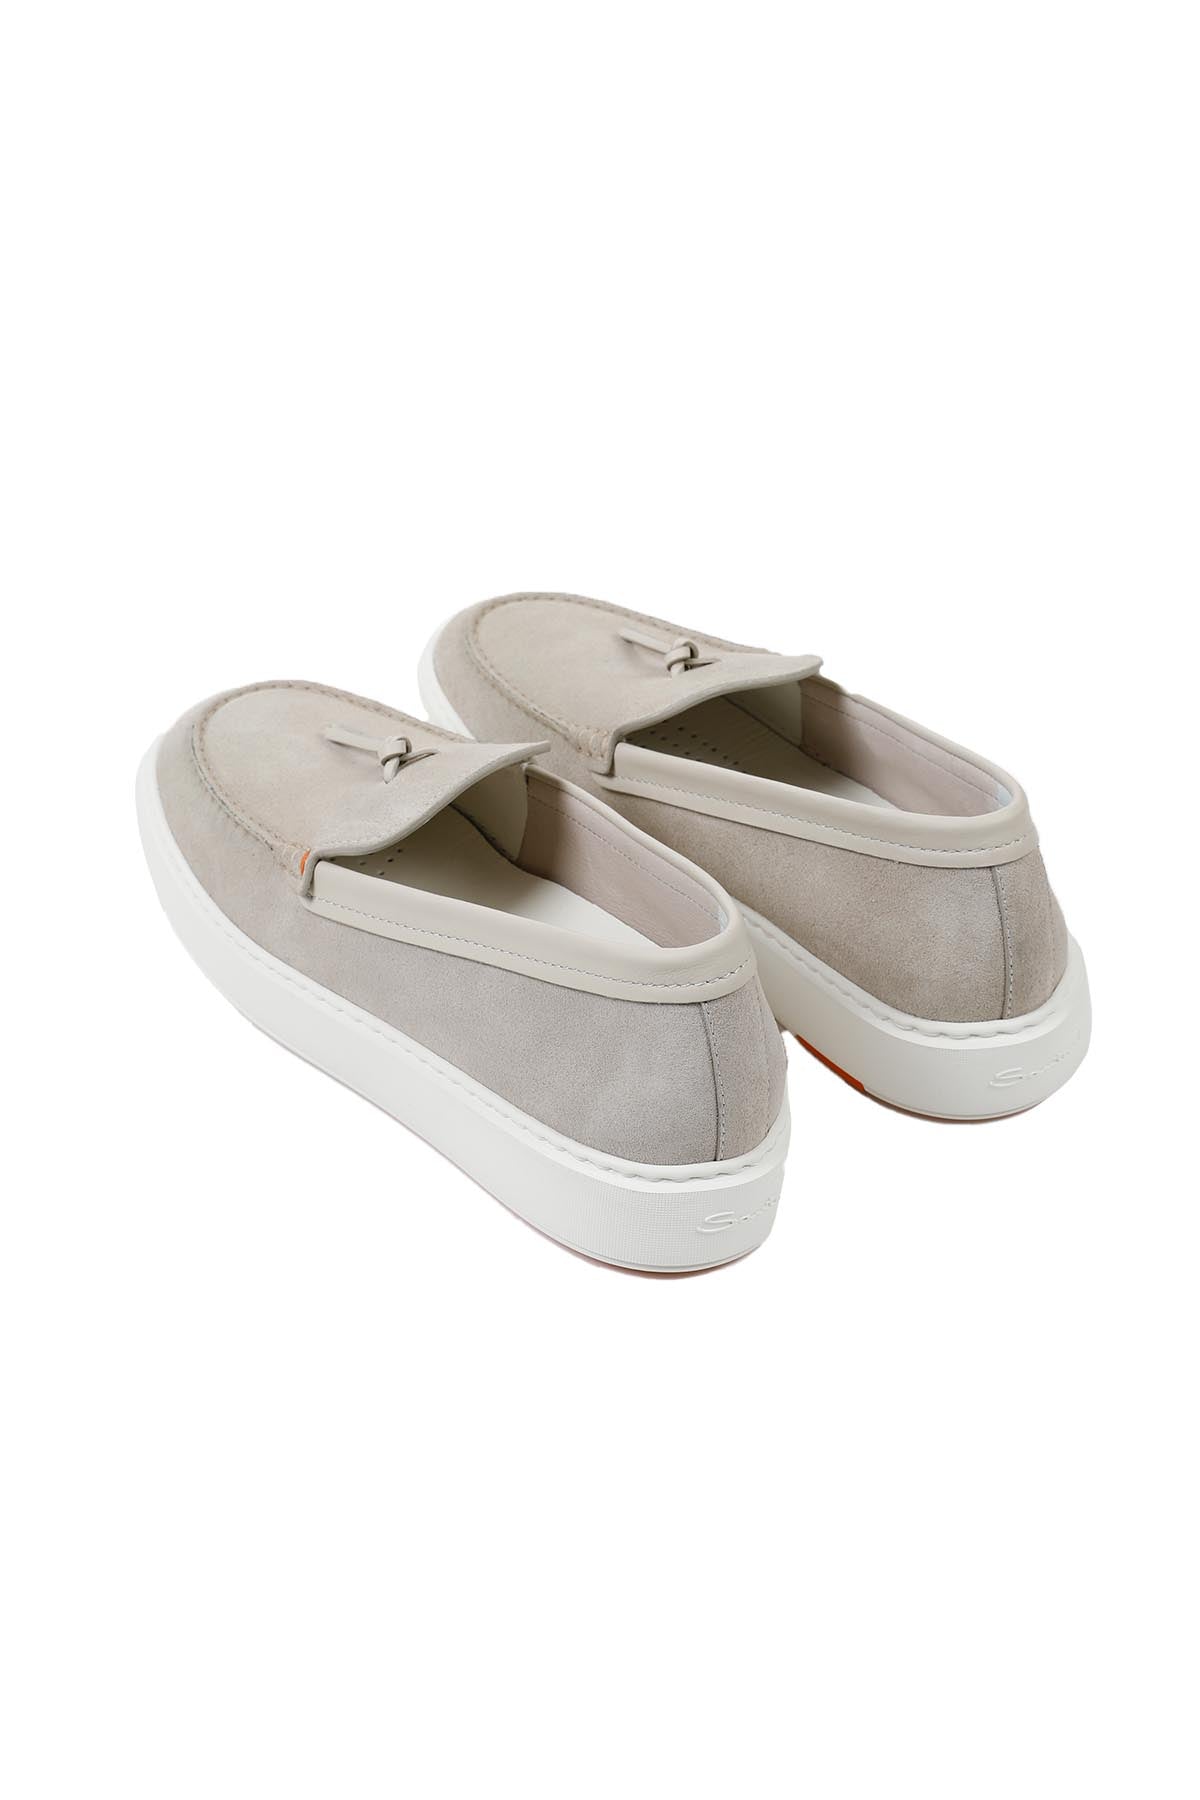 Santoni Nubuk Püsküllü Deri Loafer Ayakkabı-Libas Trendy Fashion Store